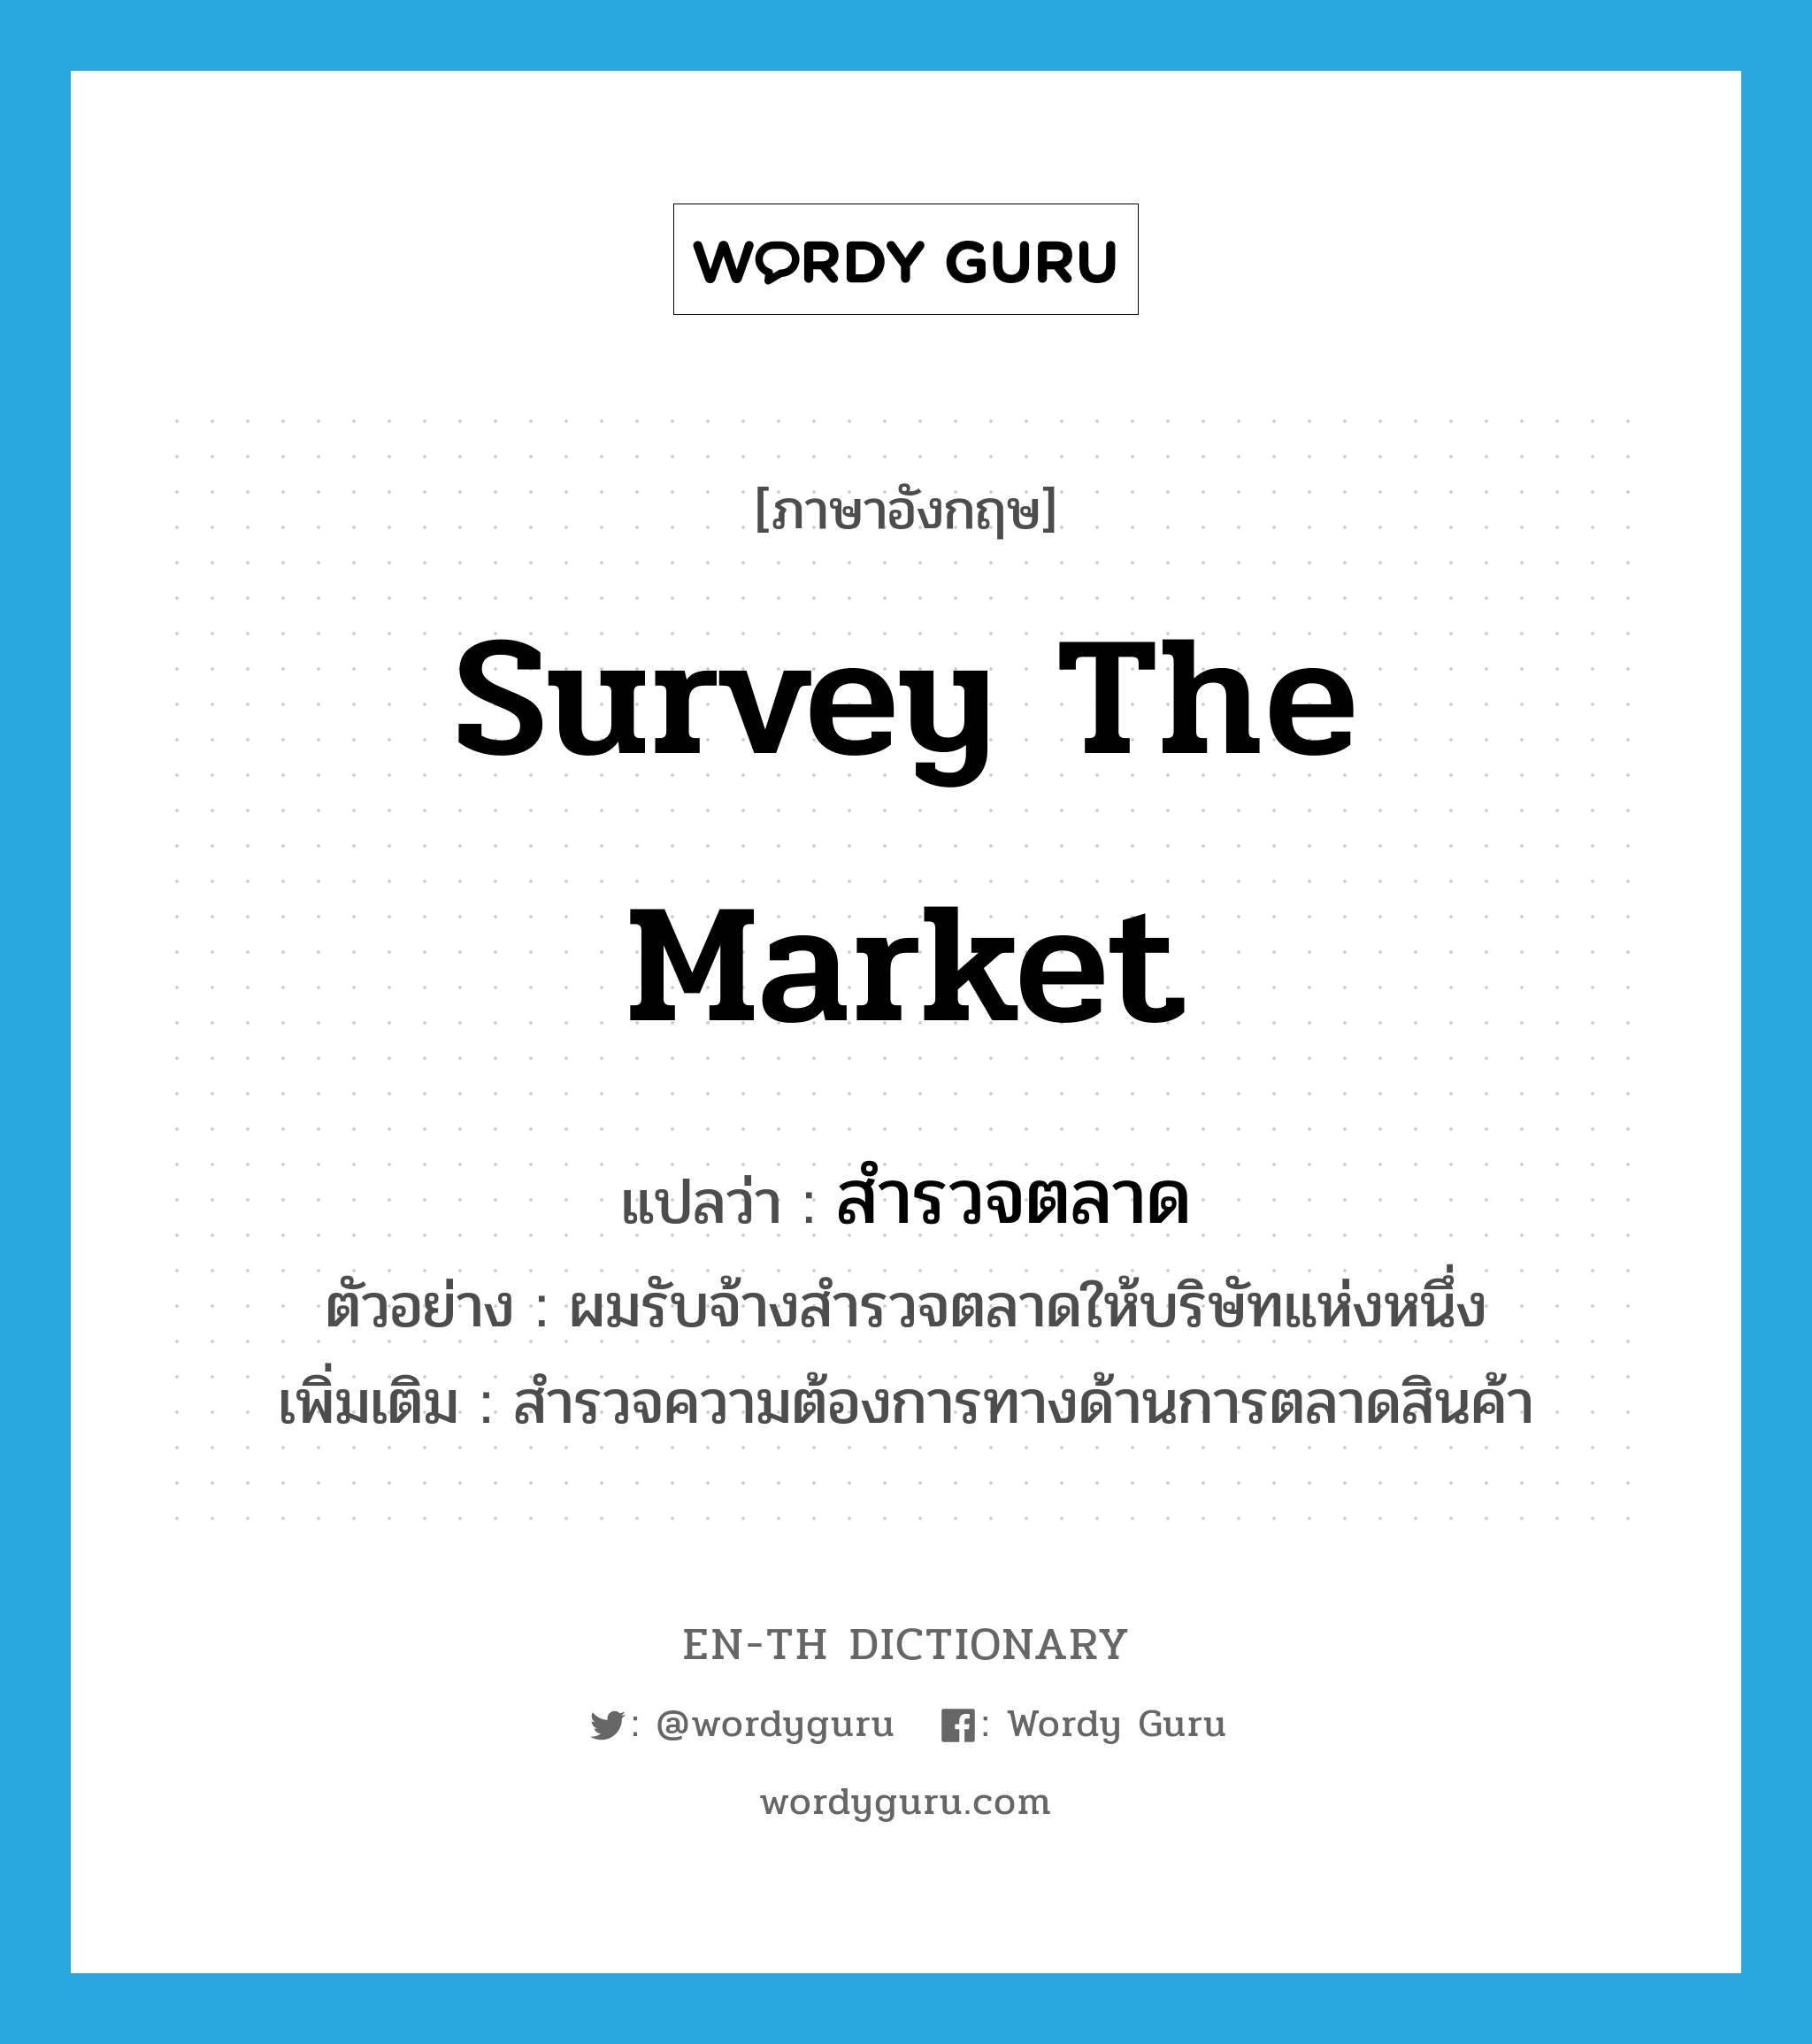 survey the market แปลว่า?, คำศัพท์ภาษาอังกฤษ survey the market แปลว่า สำรวจตลาด ประเภท V ตัวอย่าง ผมรับจ้างสำรวจตลาดให้บริษัทแห่งหนึ่ง เพิ่มเติม สำรวจความต้องการทางด้านการตลาดสินค้า หมวด V